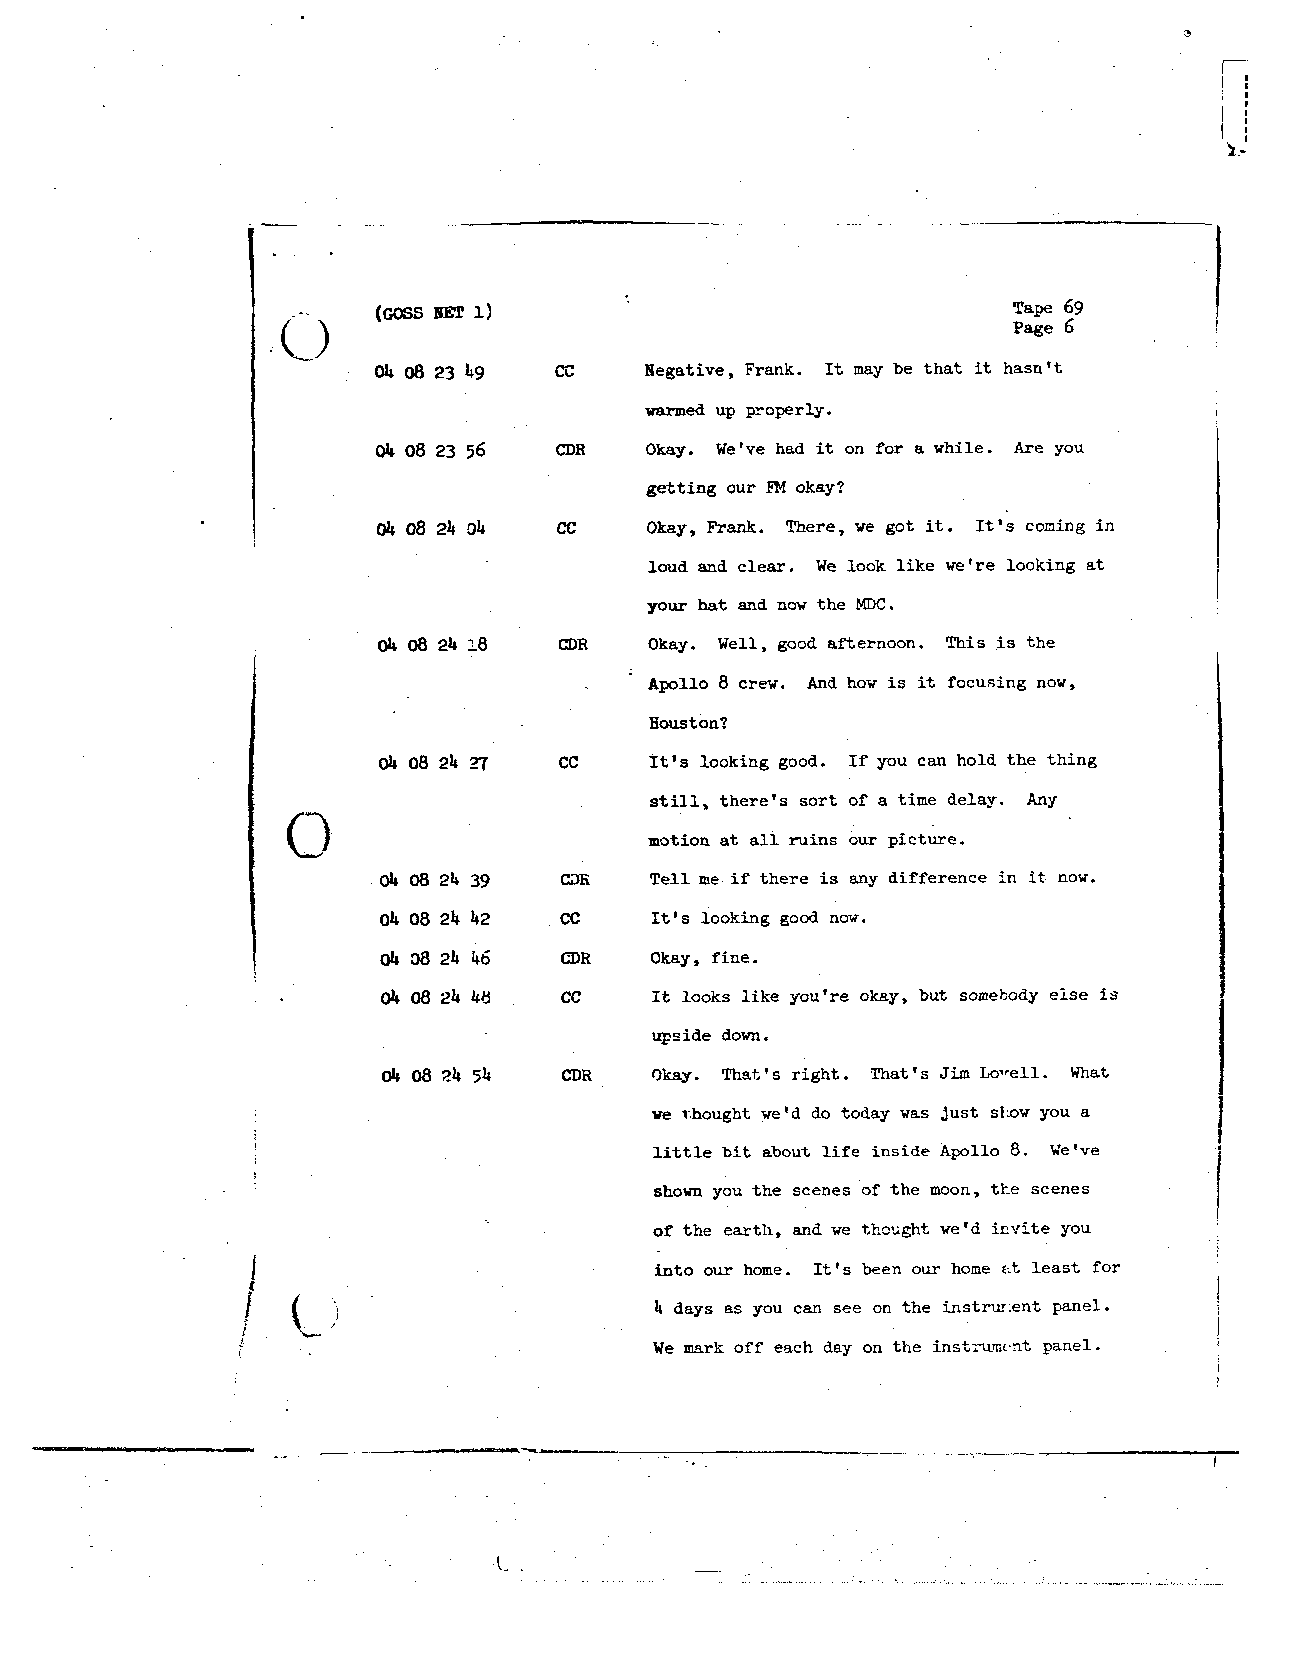 Page 552 of Apollo 8’s original transcript